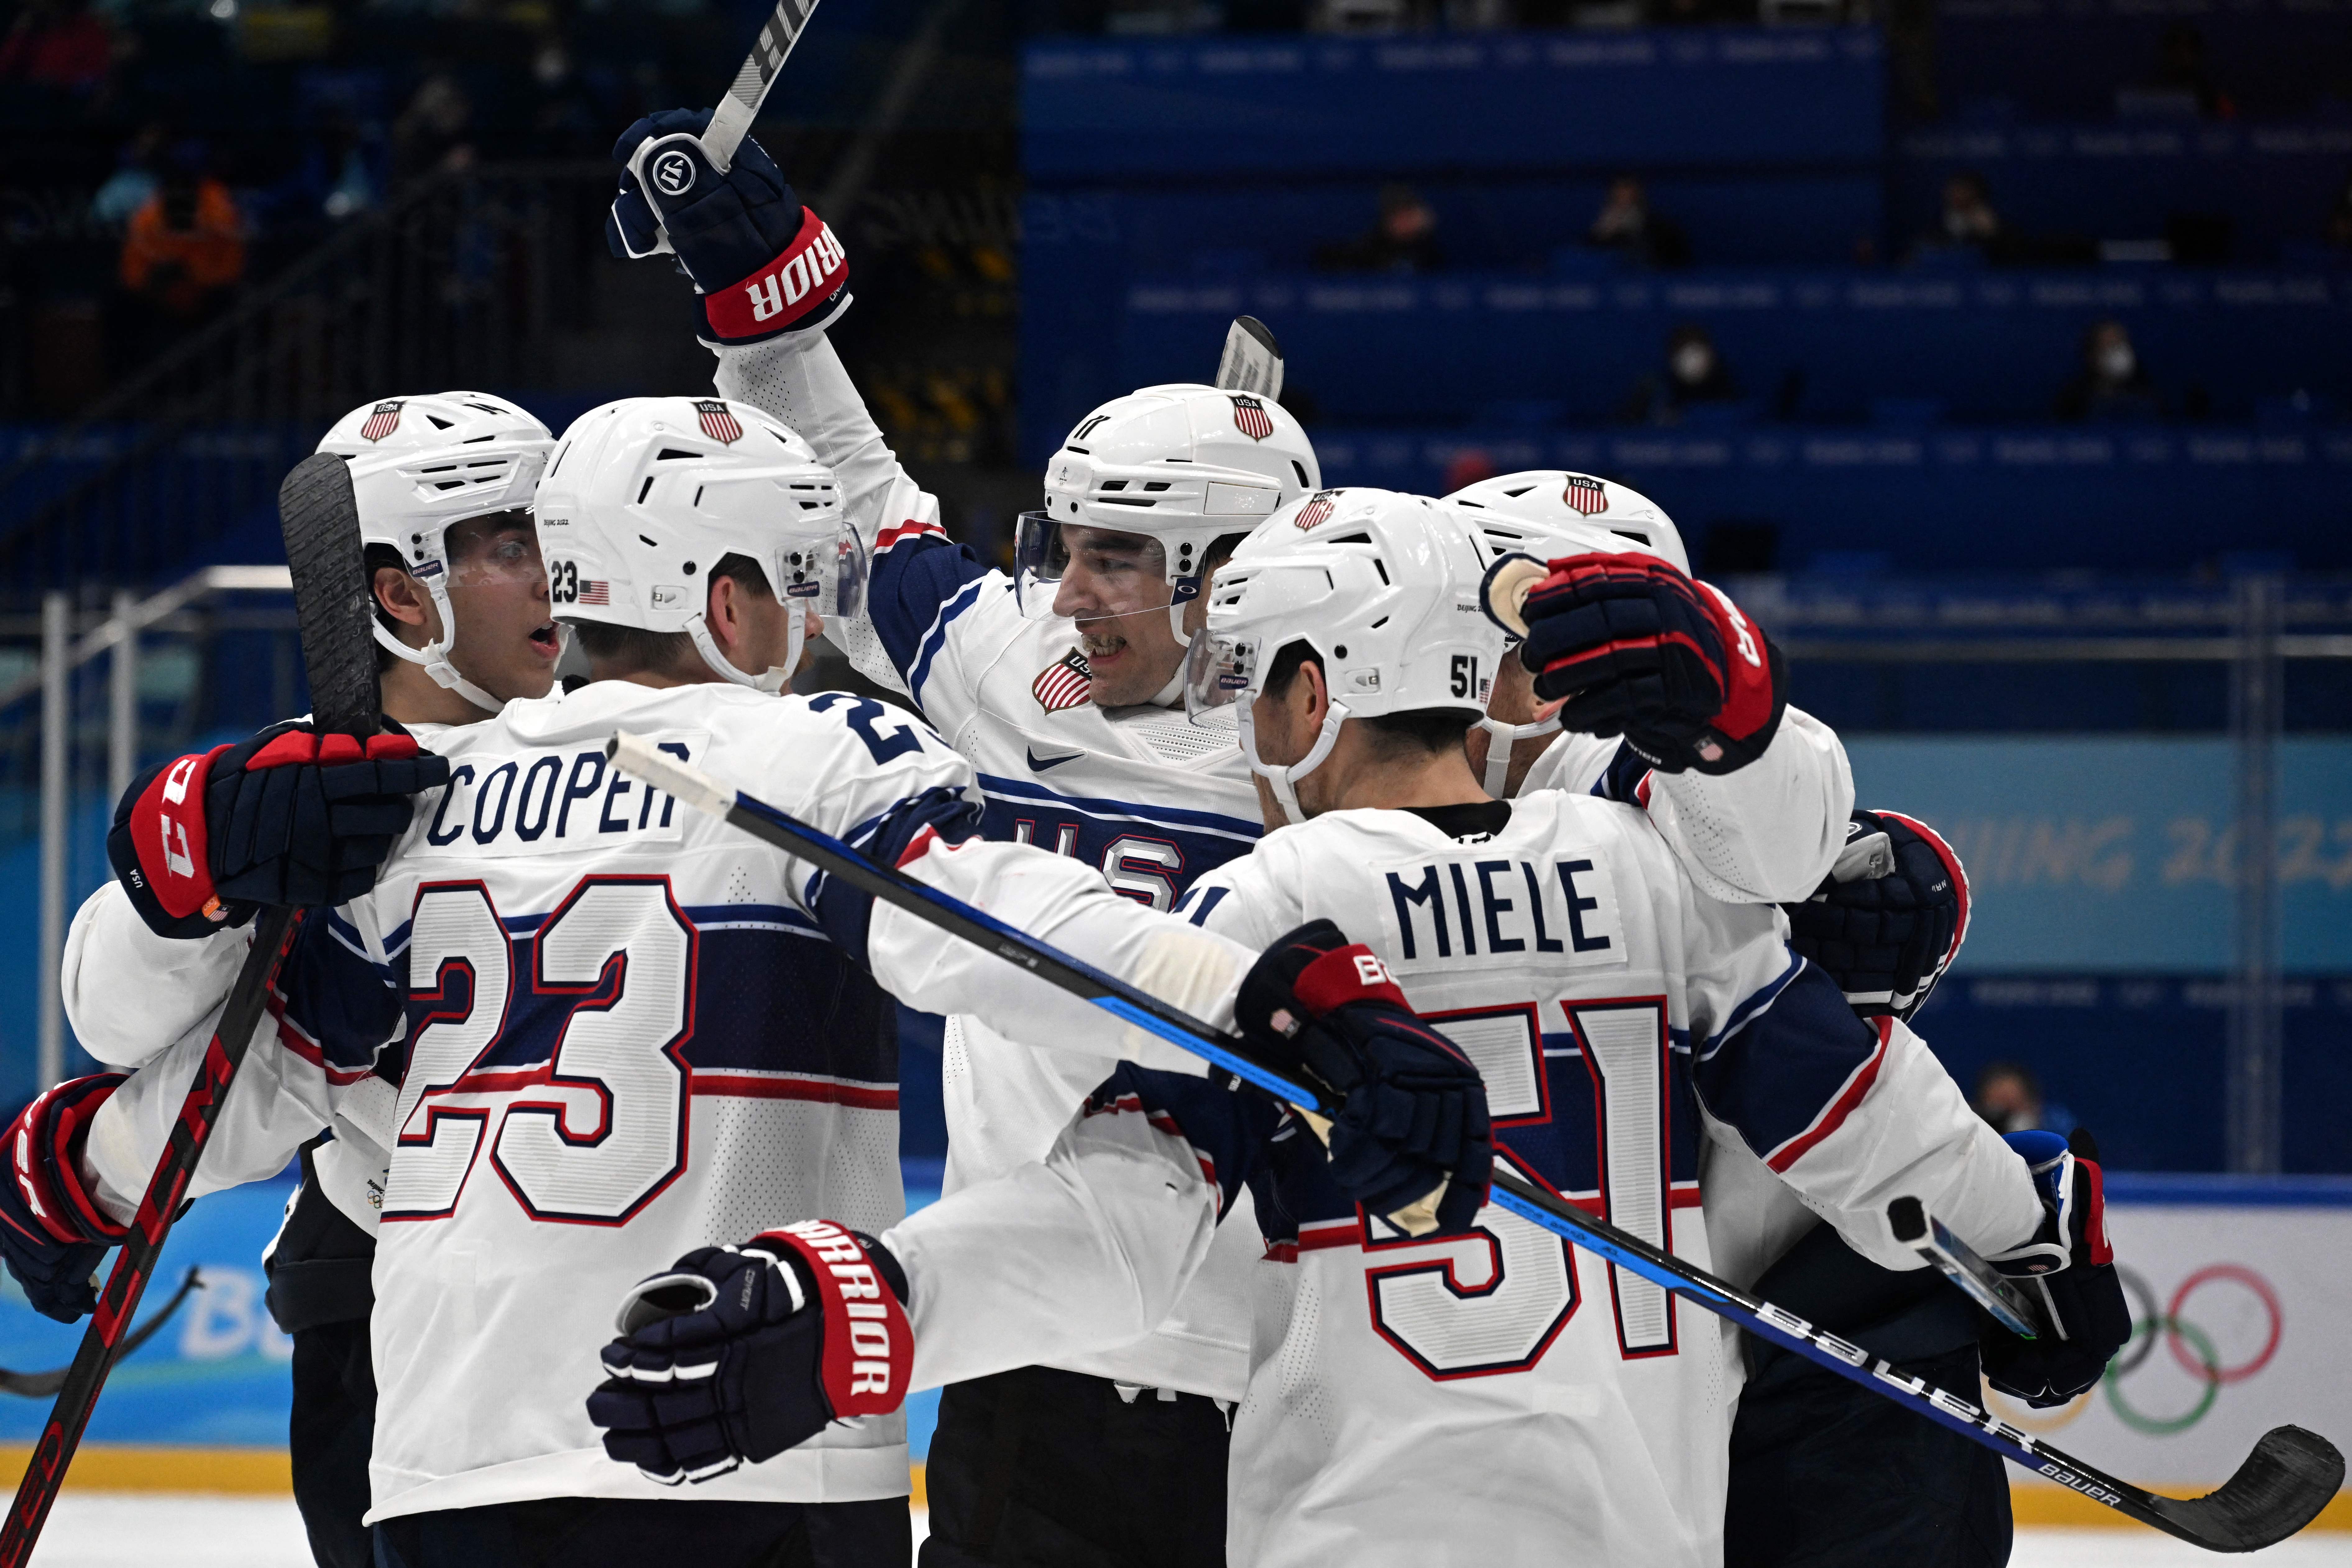 Team USA announce men's ice hockey team for Beijing 2022